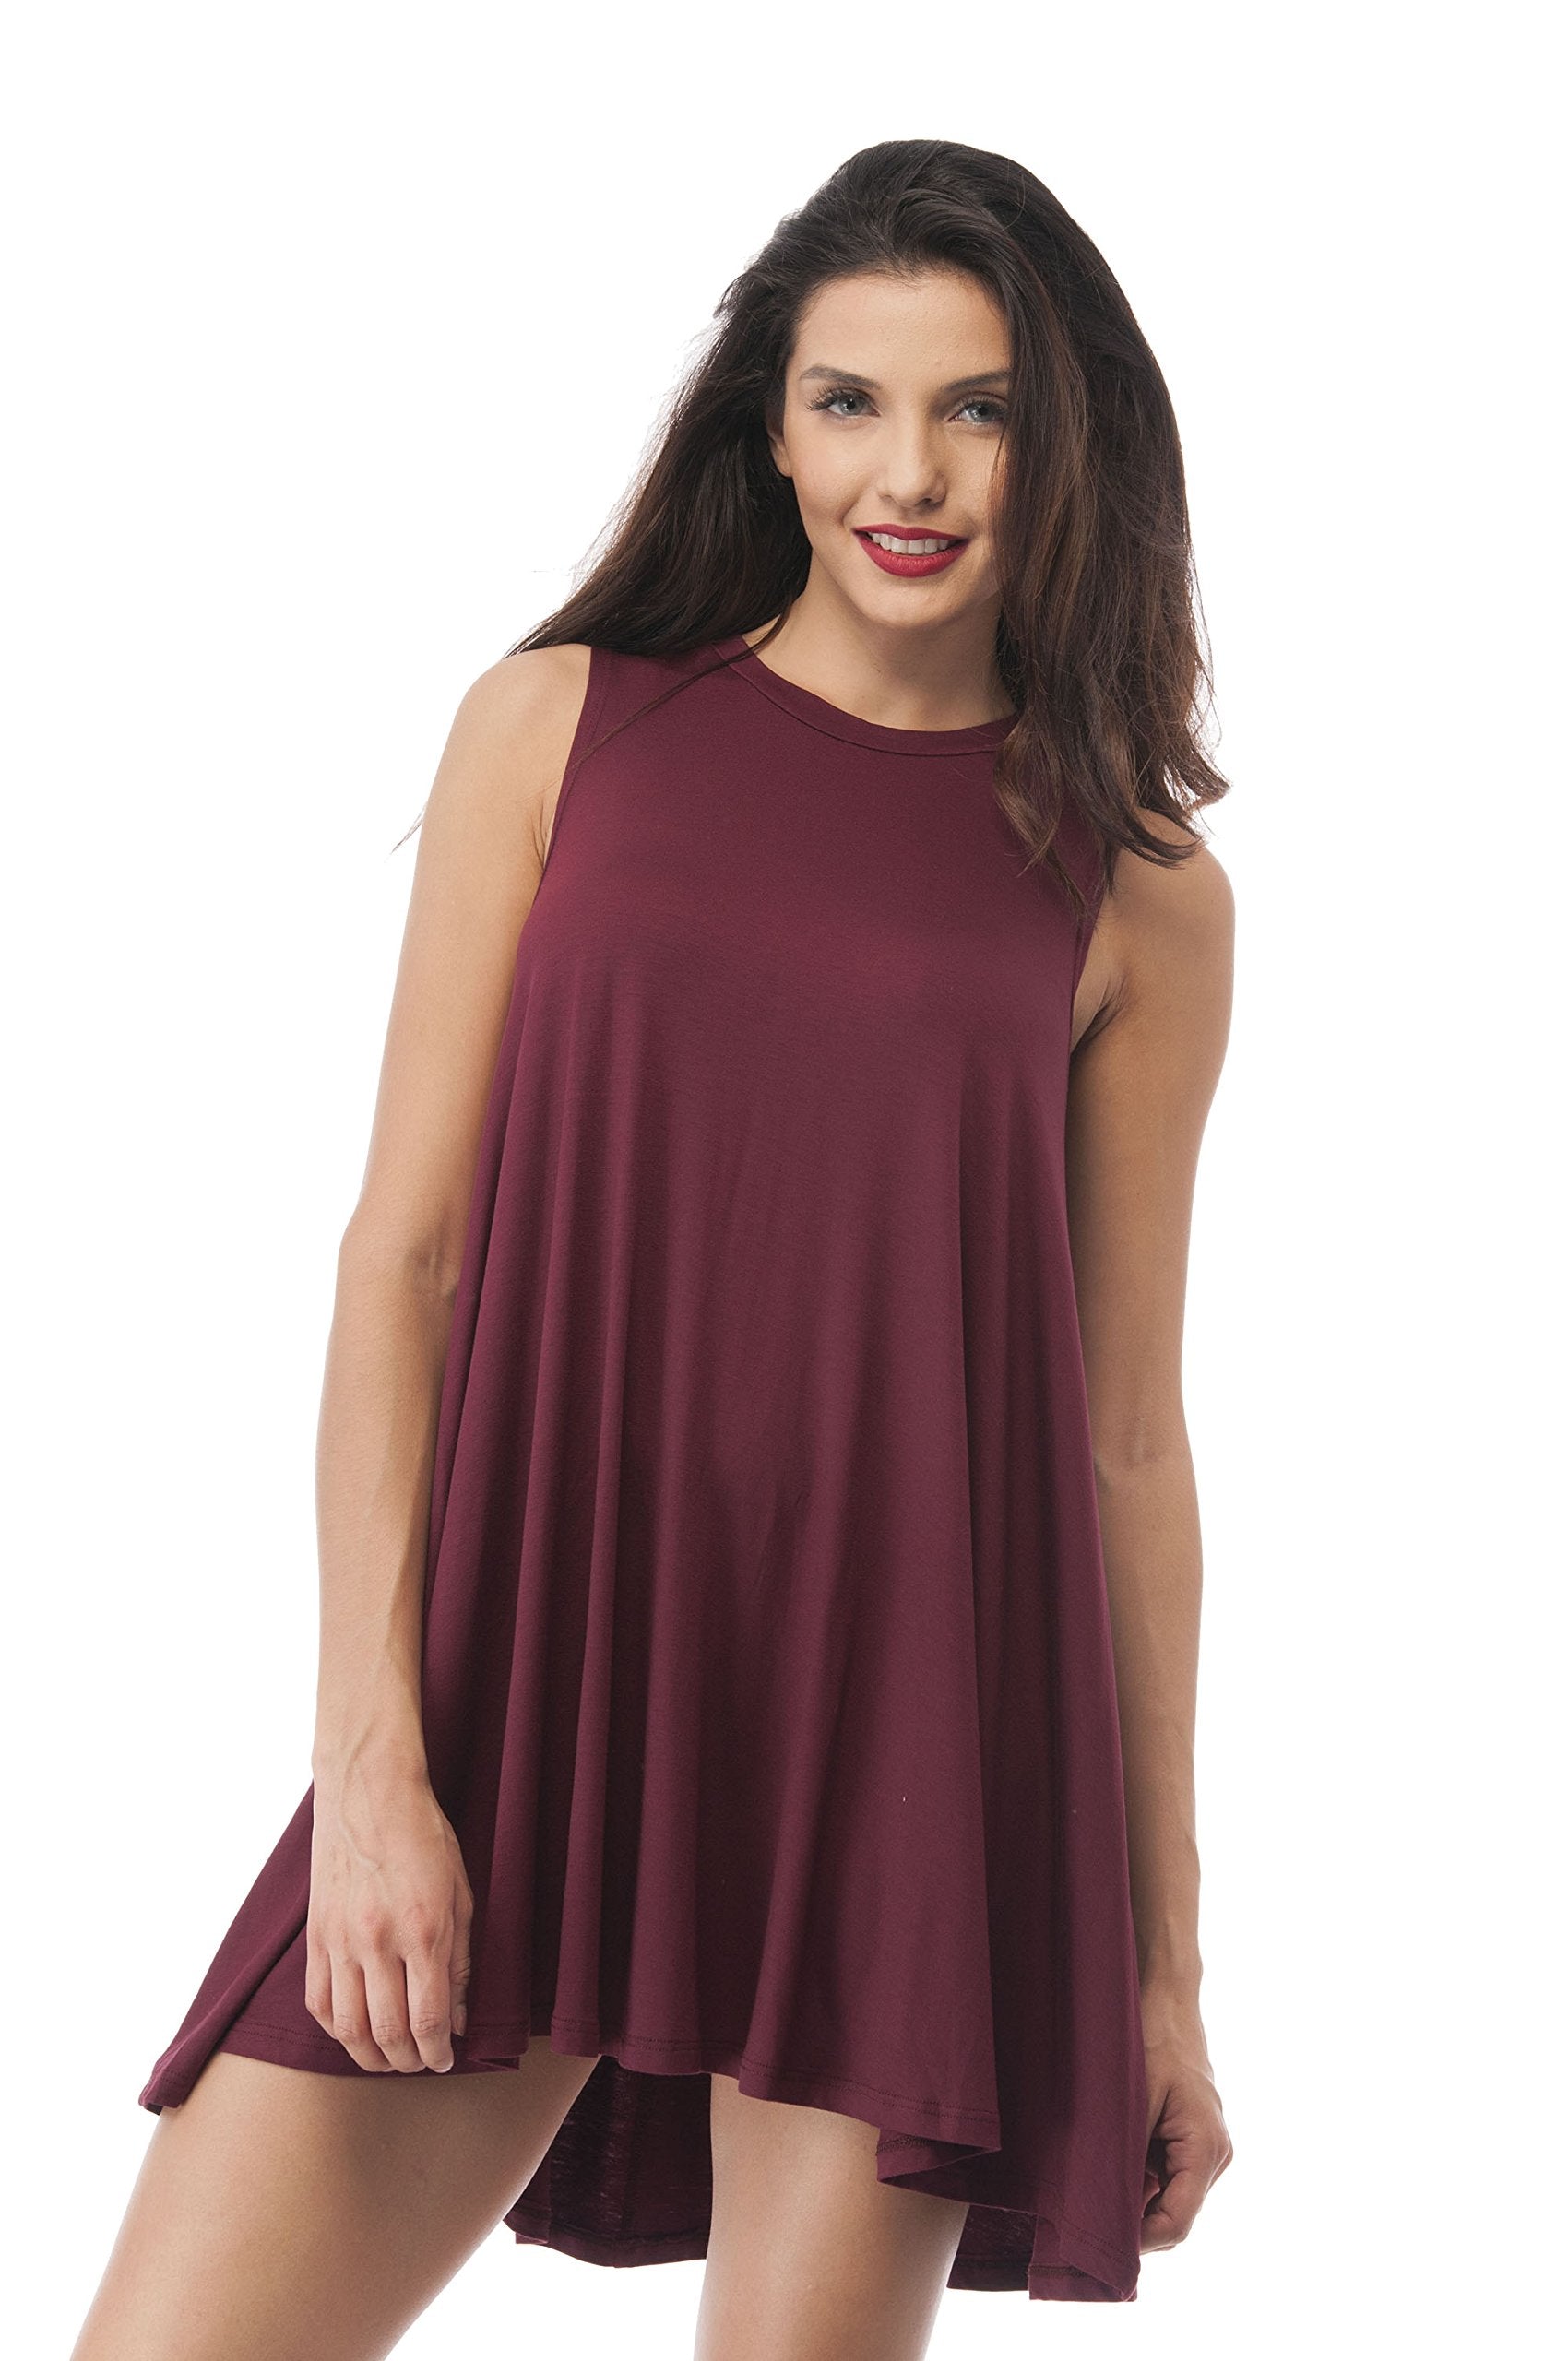 Sleeveless Oversized Shirt Dress Top